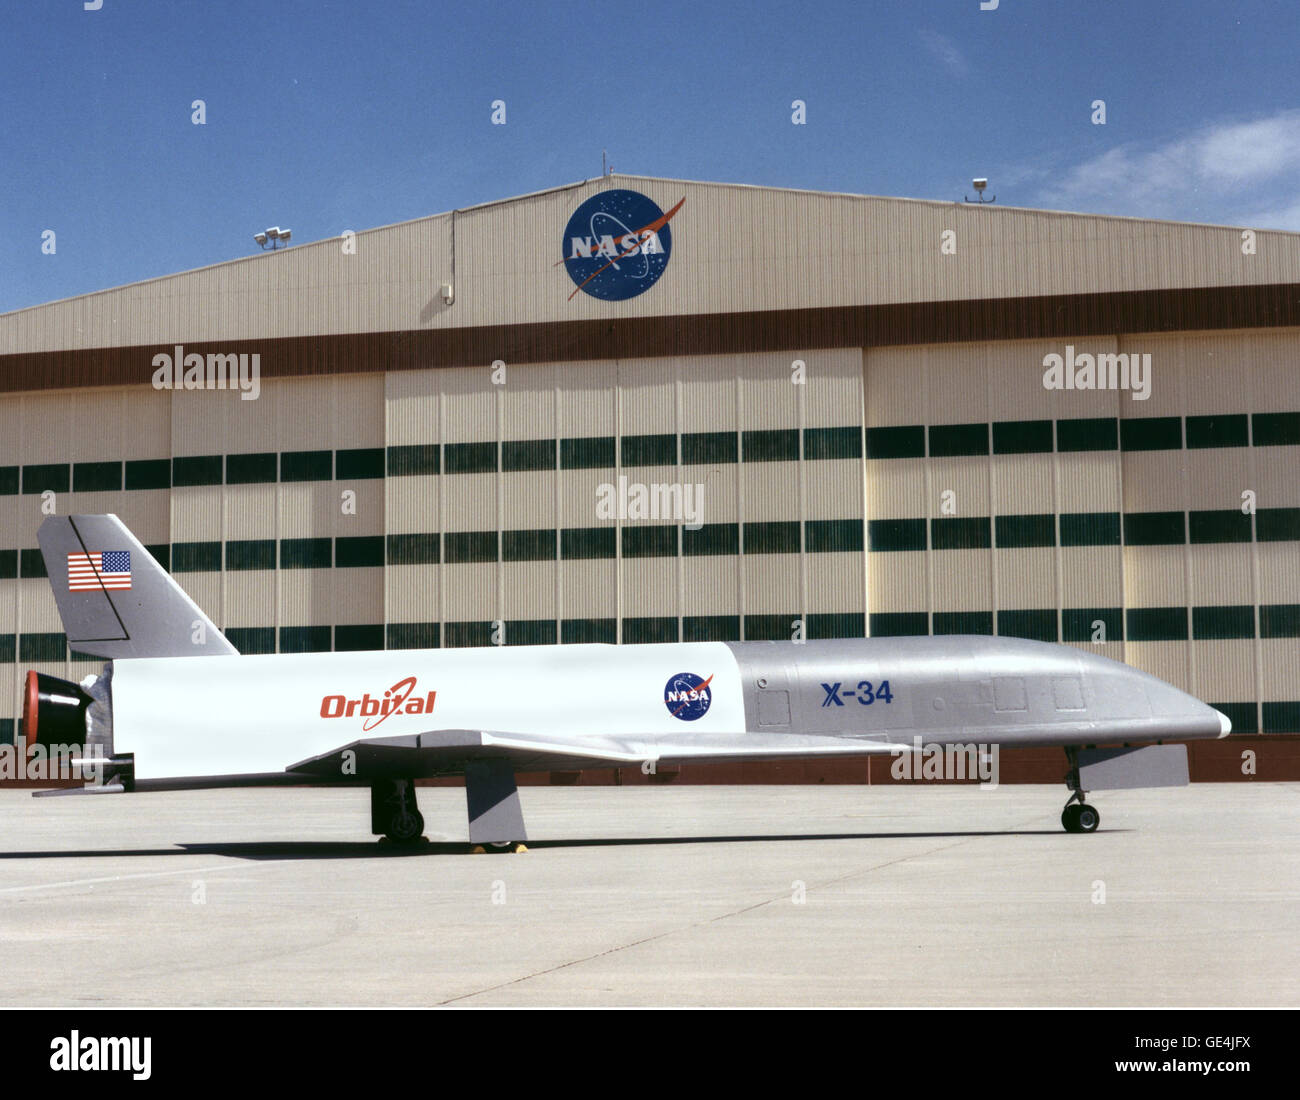 (16 aprile 1999) Questo è l'X-34 Tecnologia banco di prova dimostrante che viene erogata alla NASA Dryden Flight Research Center, Edwards, California. L'X-34 dimostrerà il veicolo chiave e tecnologie operative applicabili al futuro a basso costo resuable veicoli di lancio. Immagine # : CE99-44976-4 Foto Stock